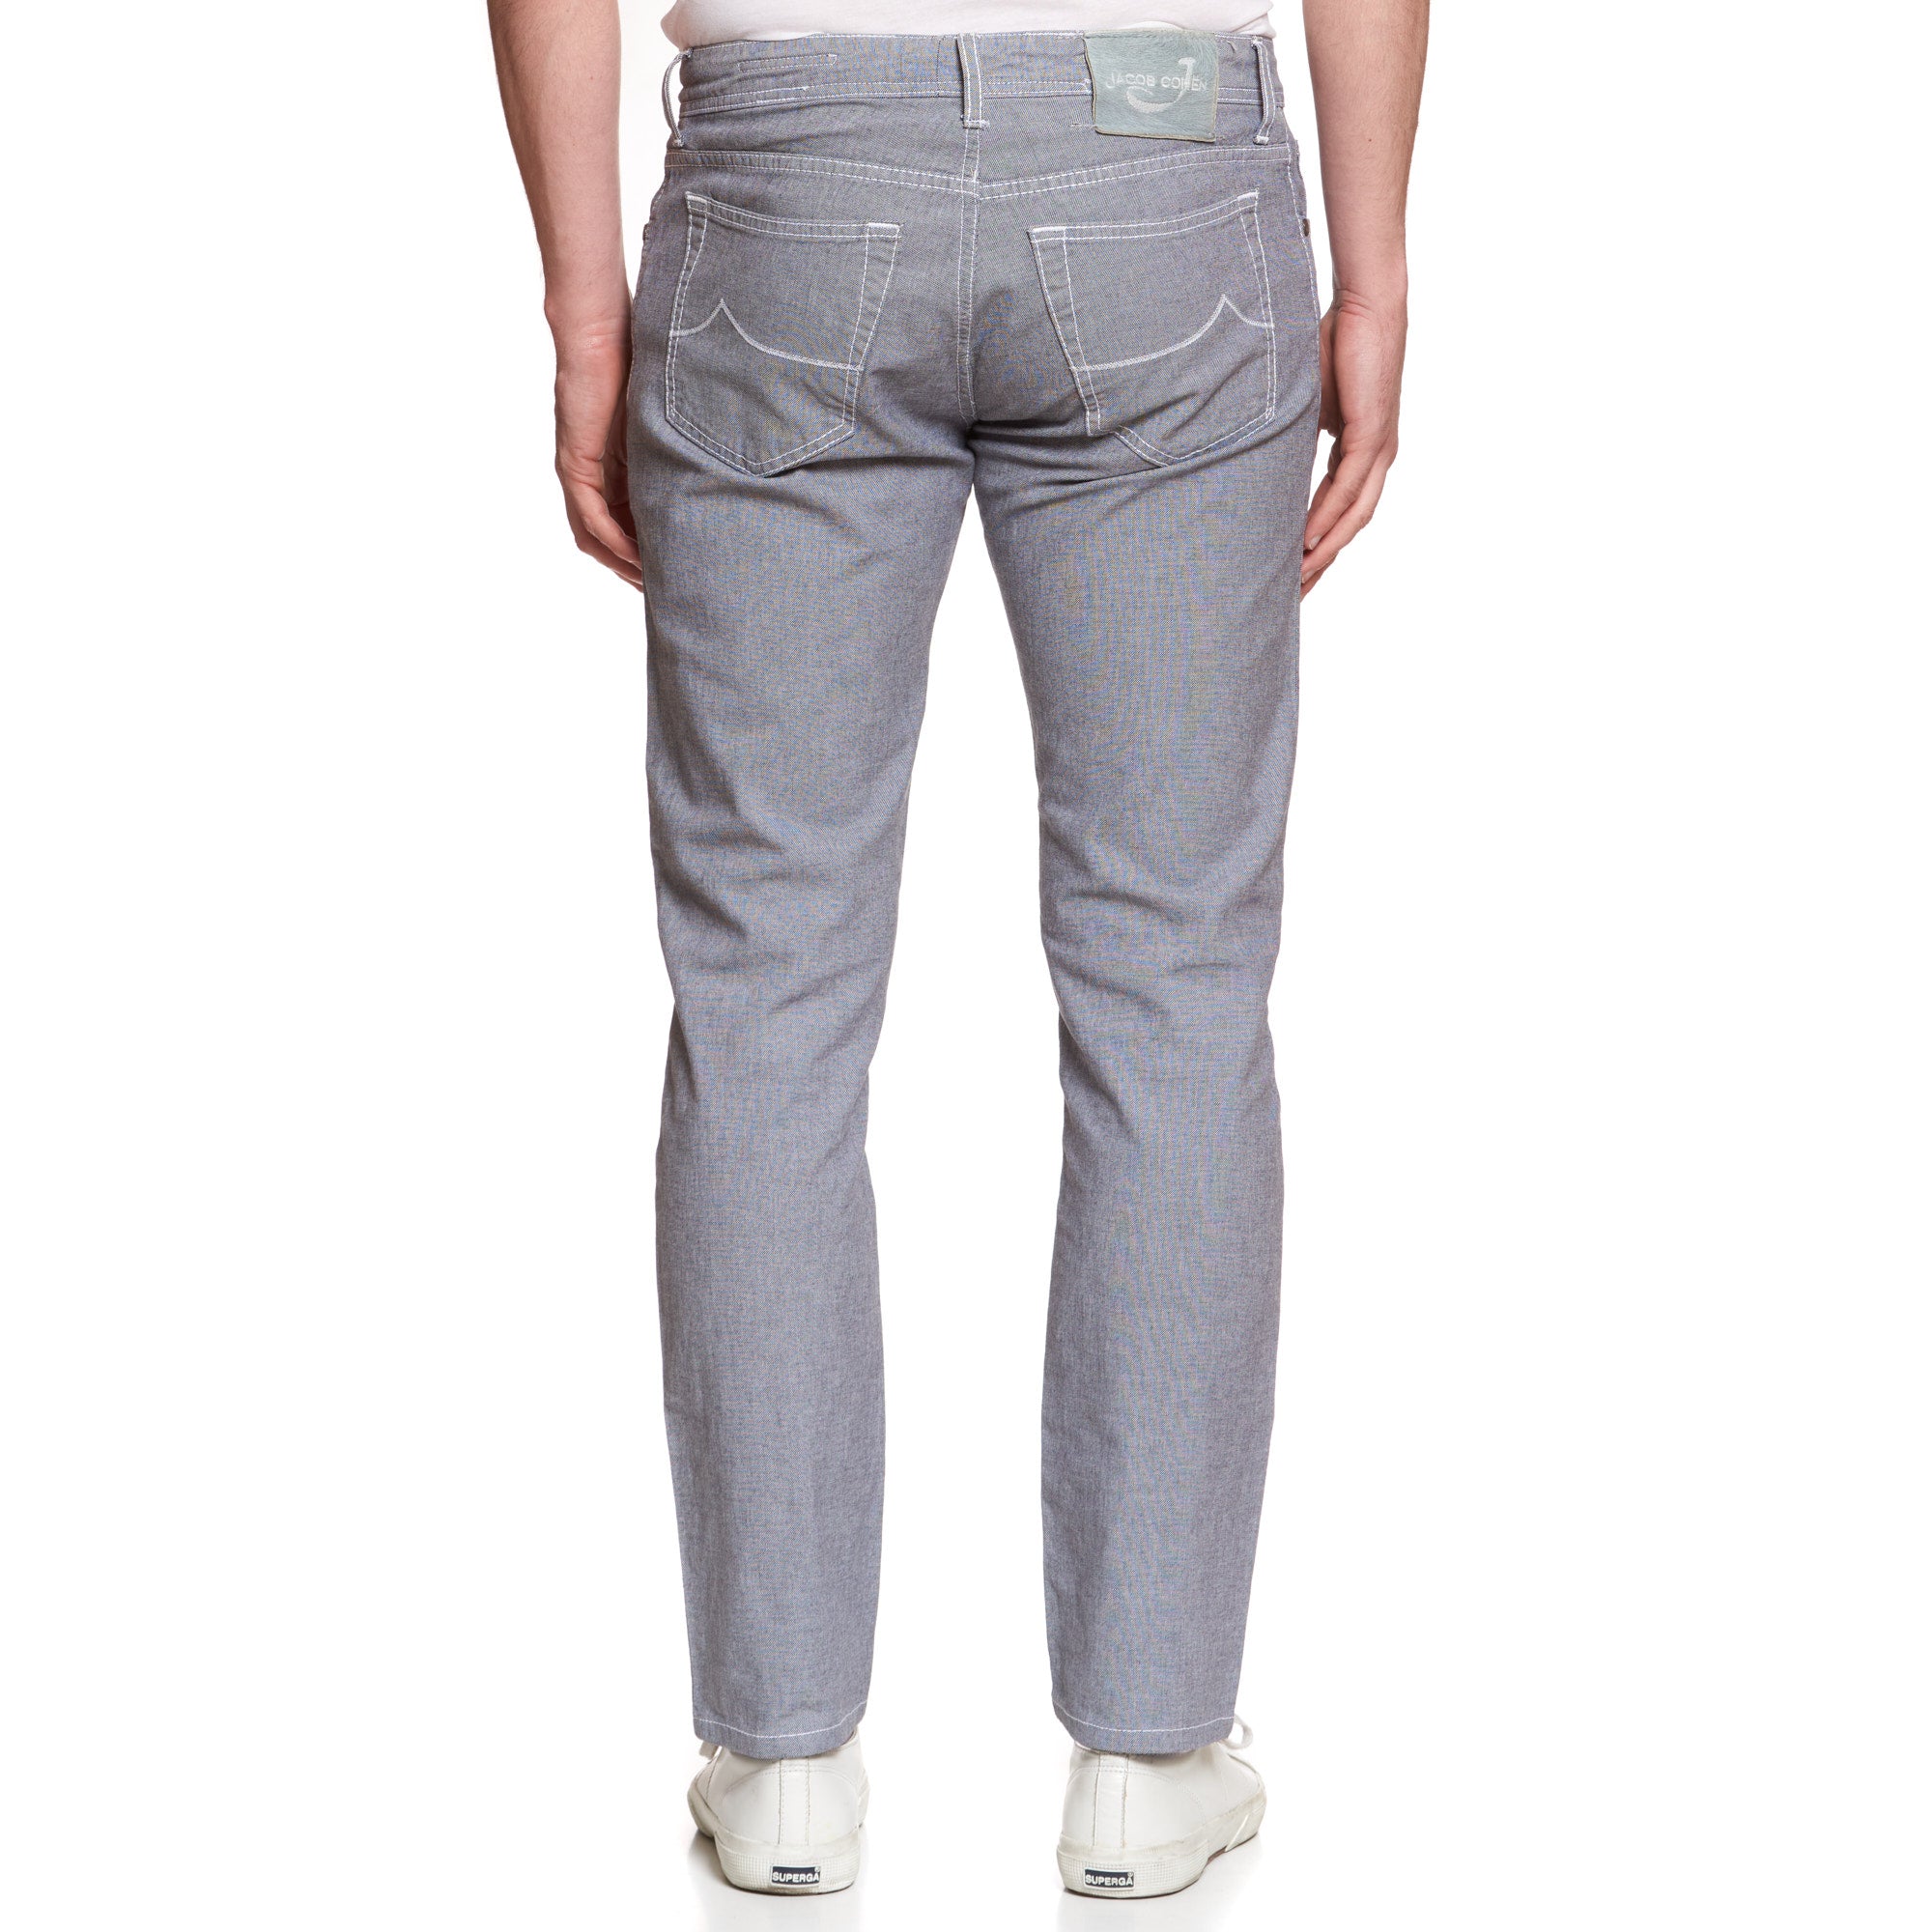 JACOB COHEN J688 Comfort Vintage Gray Cotton Stretch Slim Fit Jeans Pants US 33 JACOB COHEN